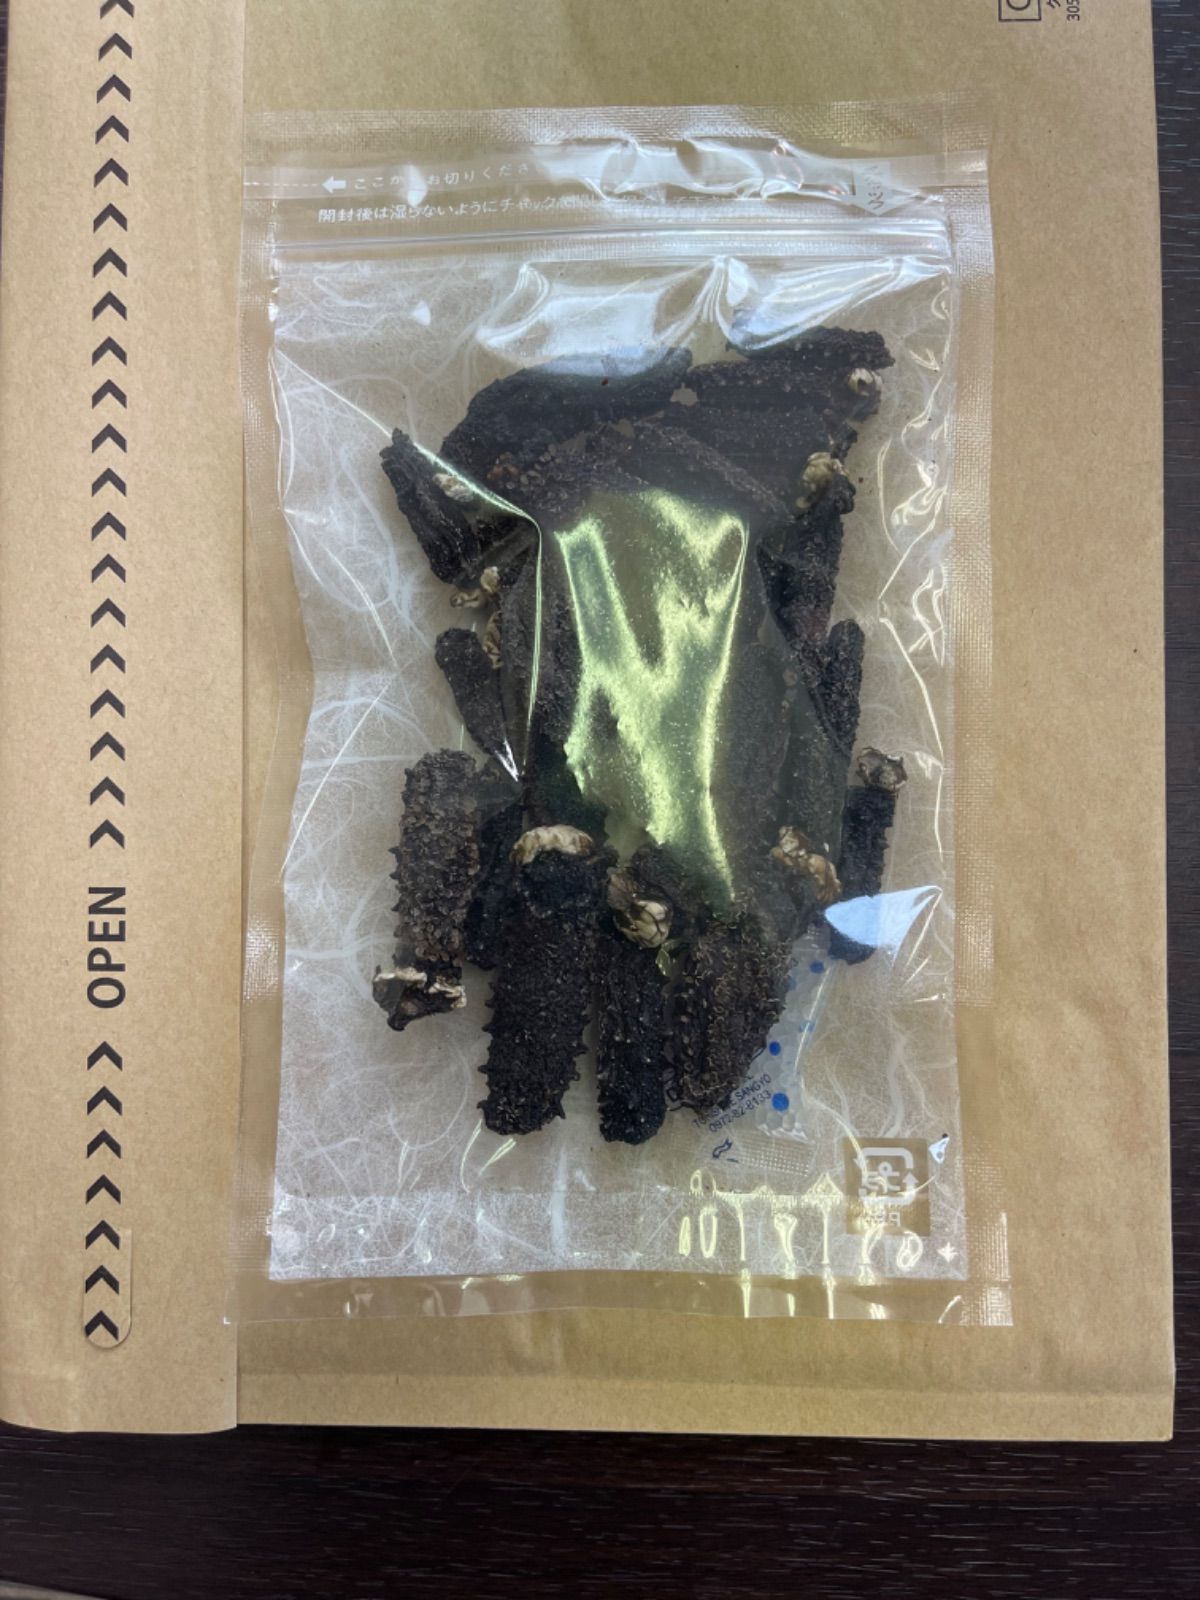 超歓迎】【超歓迎】沖縄県産 ナマコ 海鼠 石ナマコ イシナマコ 珍味